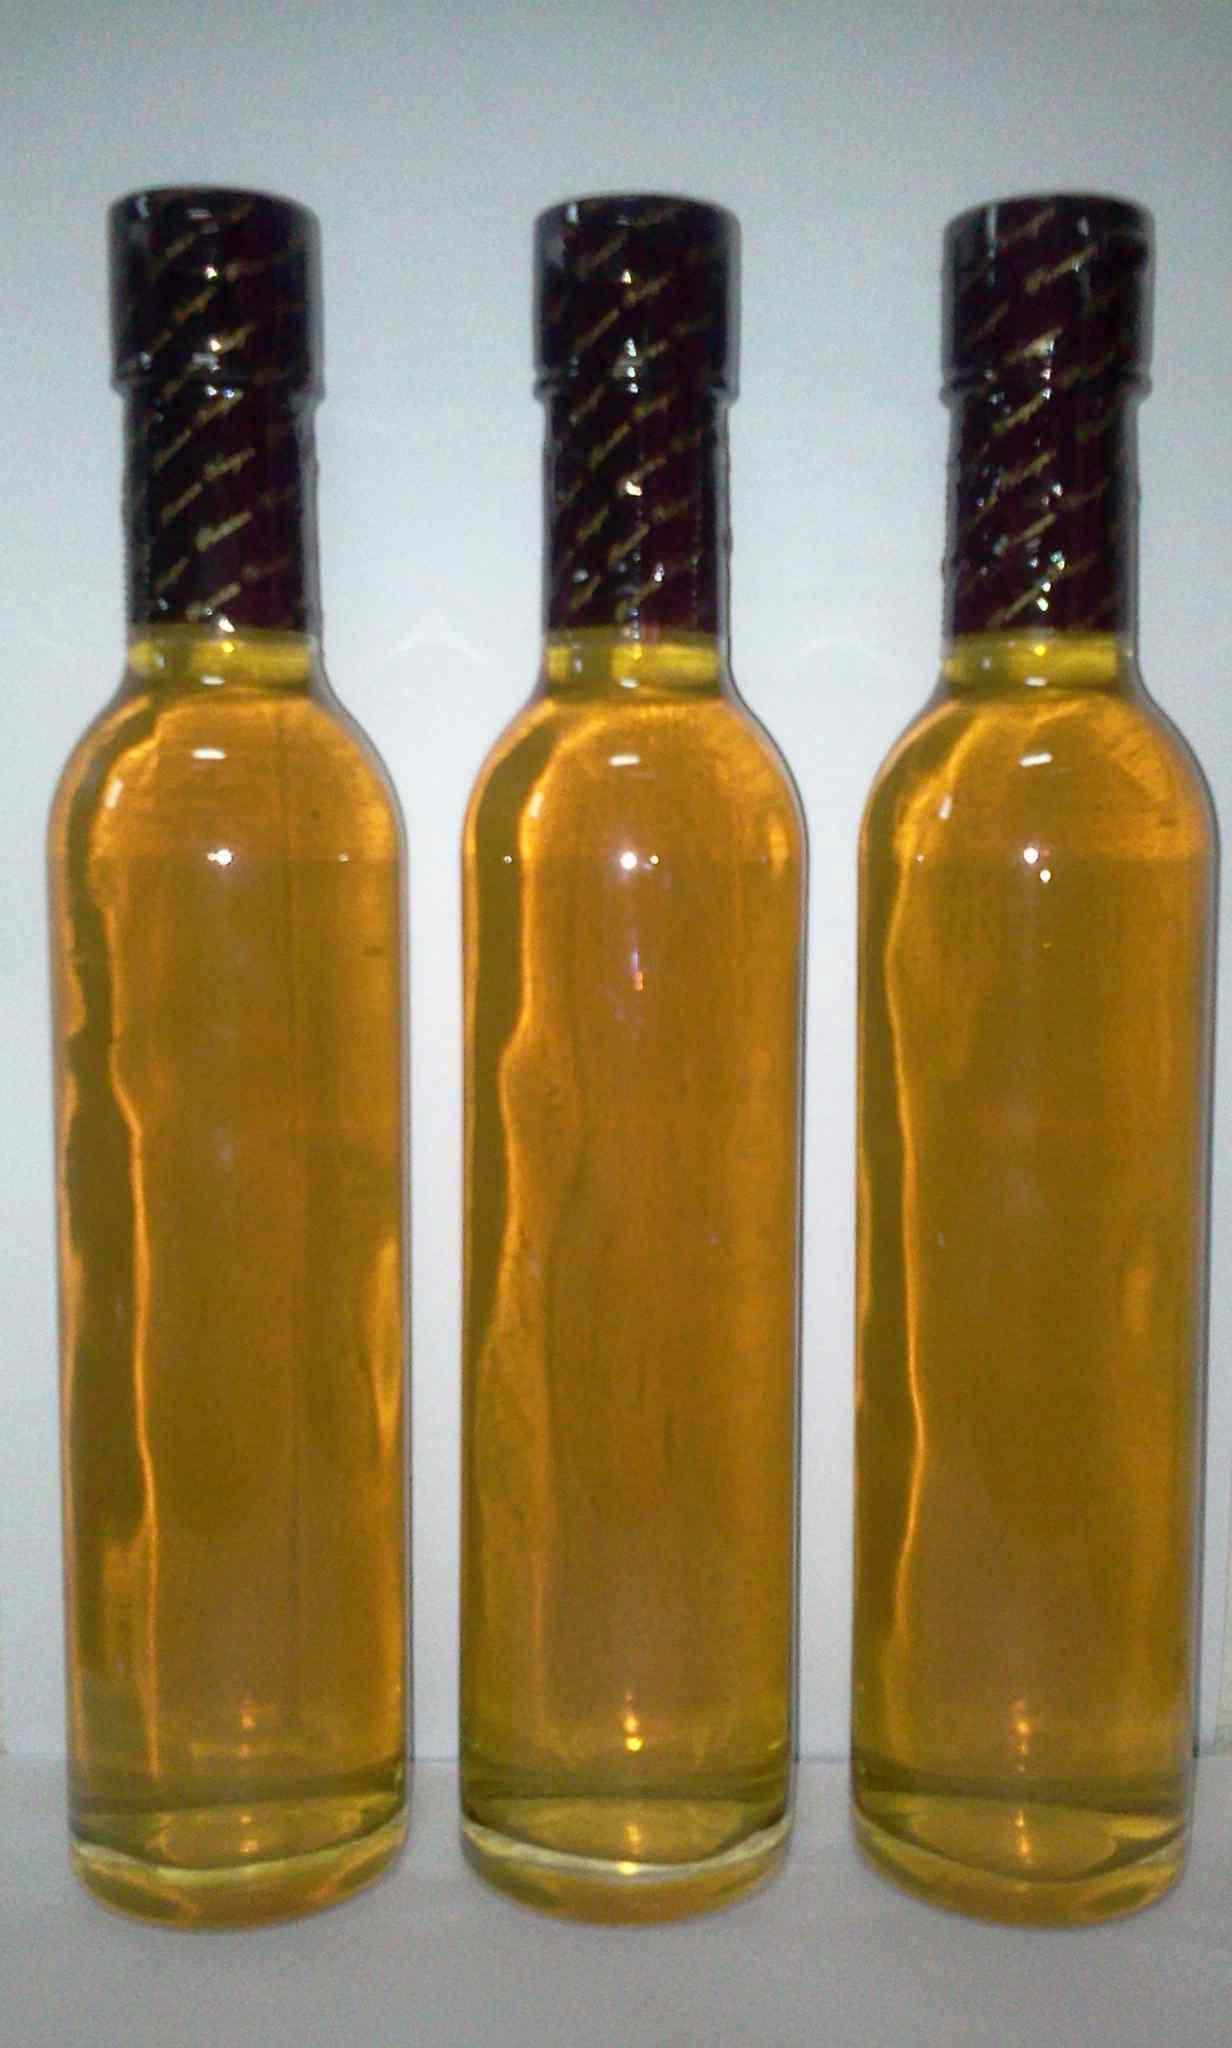 야콘 발효원액을 이용한 음료베이스 시제품